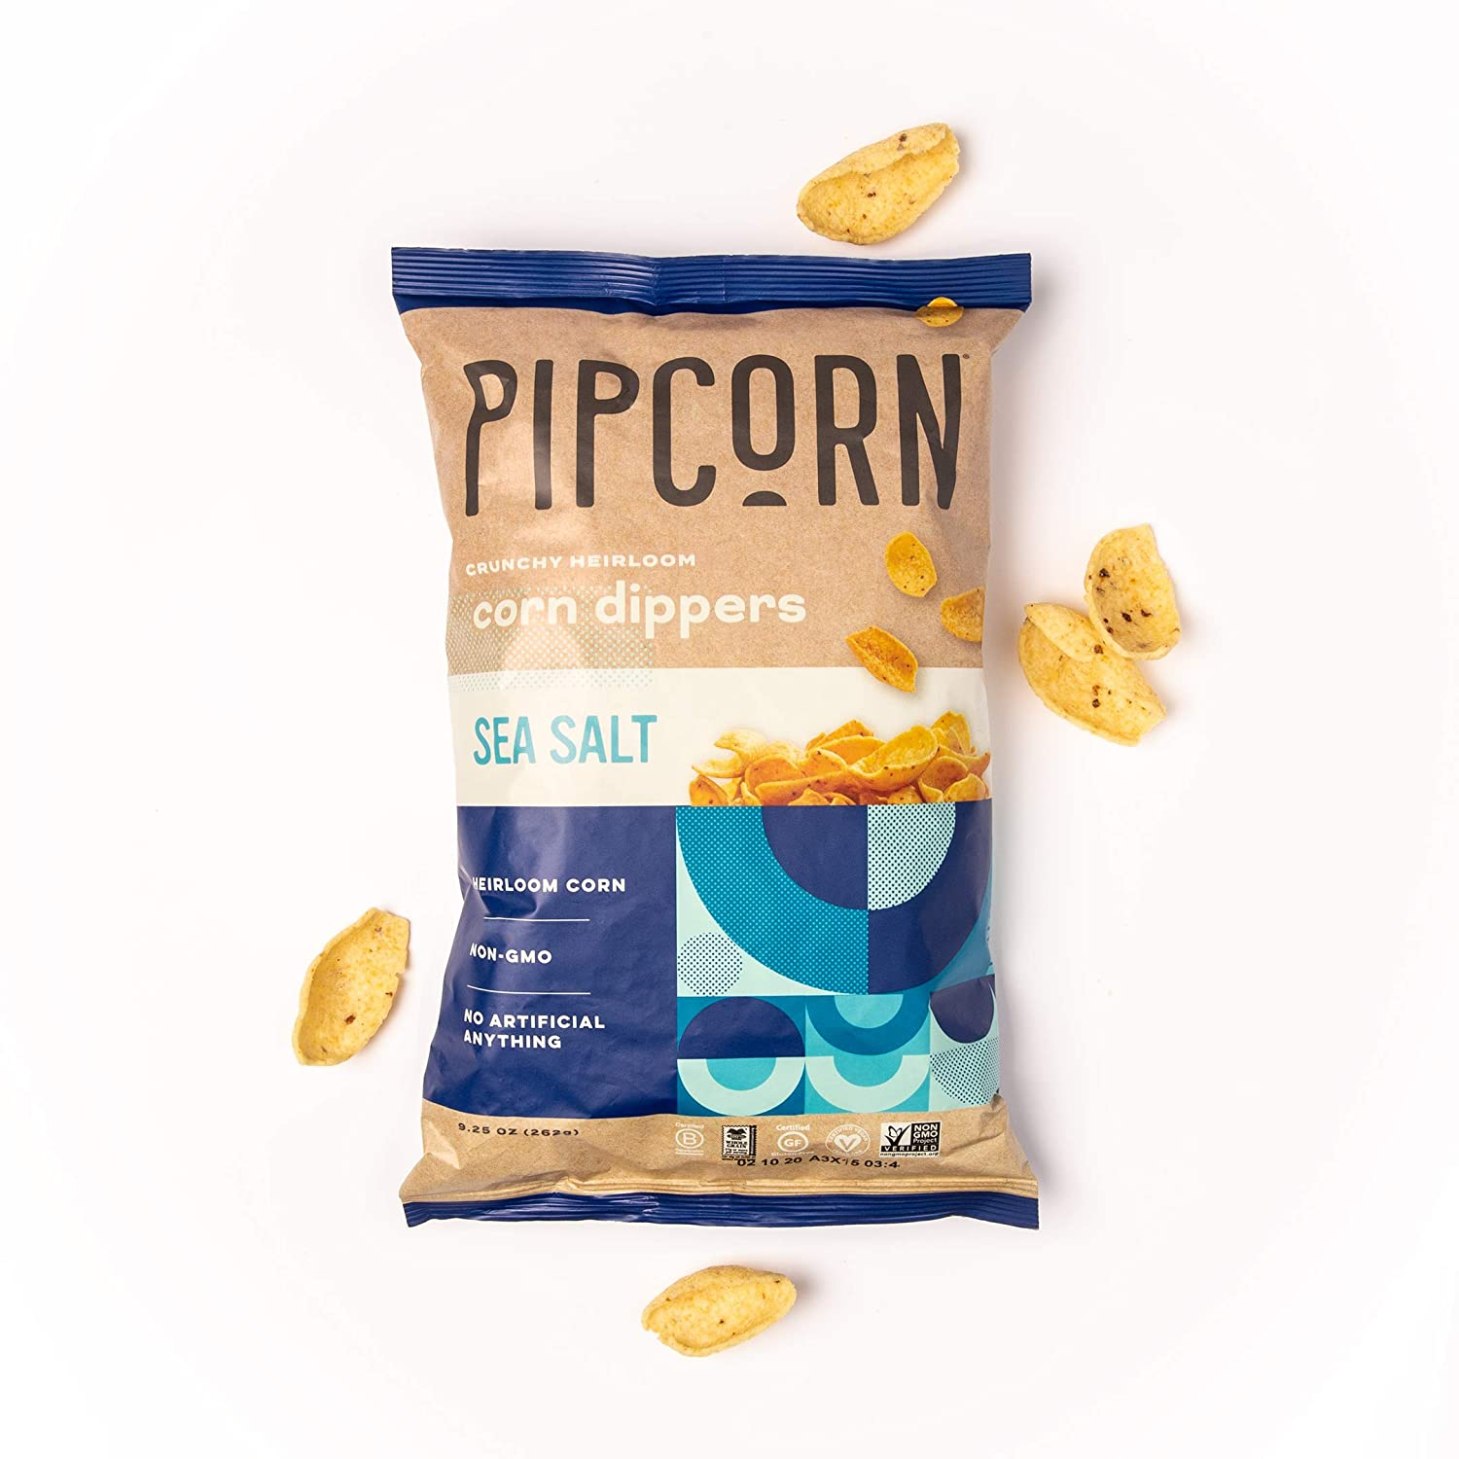 pipcorn corn dippers